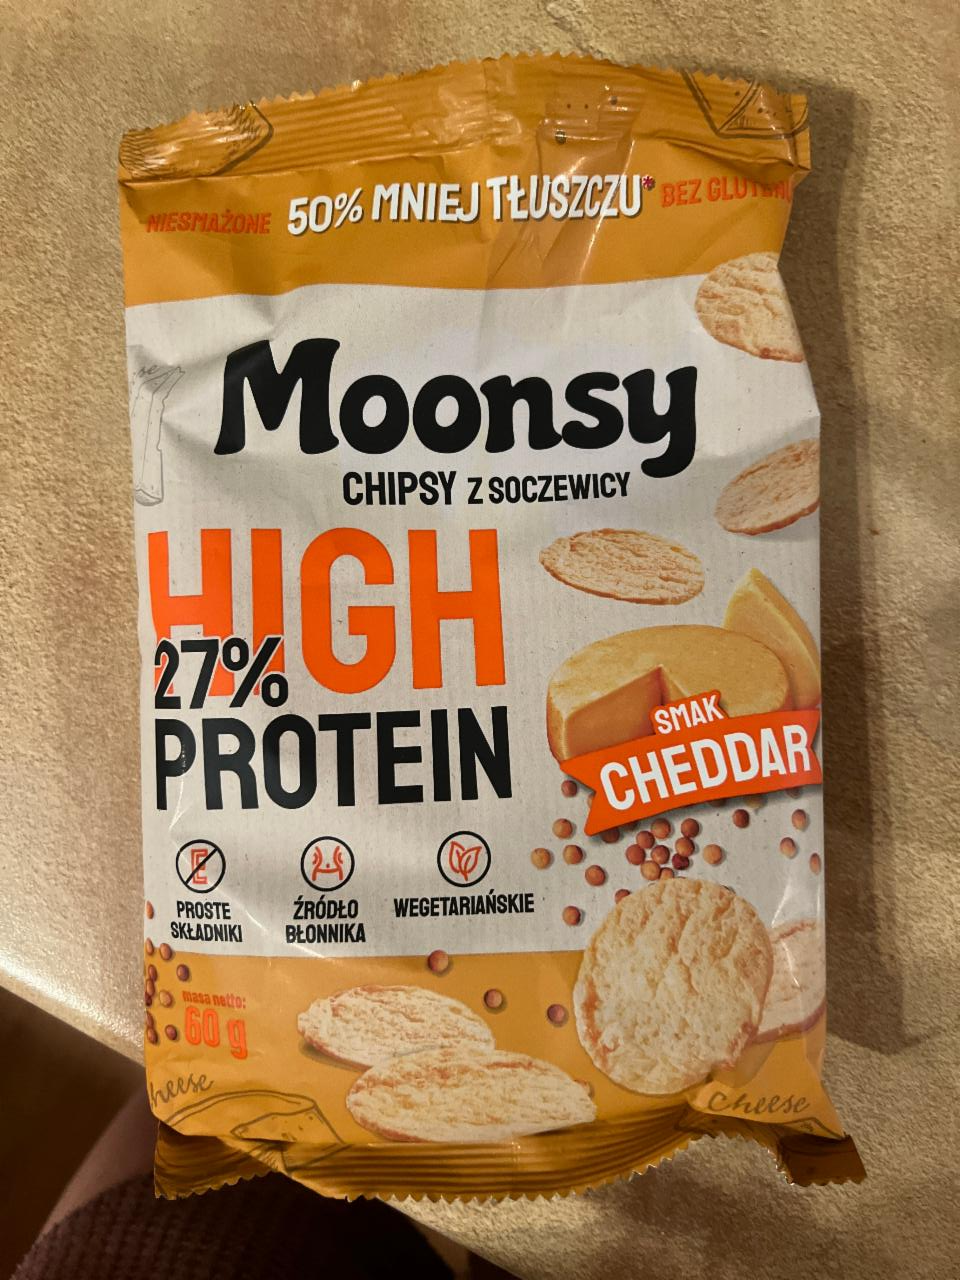 Фото - Chipsy z soczewicy smak cheddar Moonsy